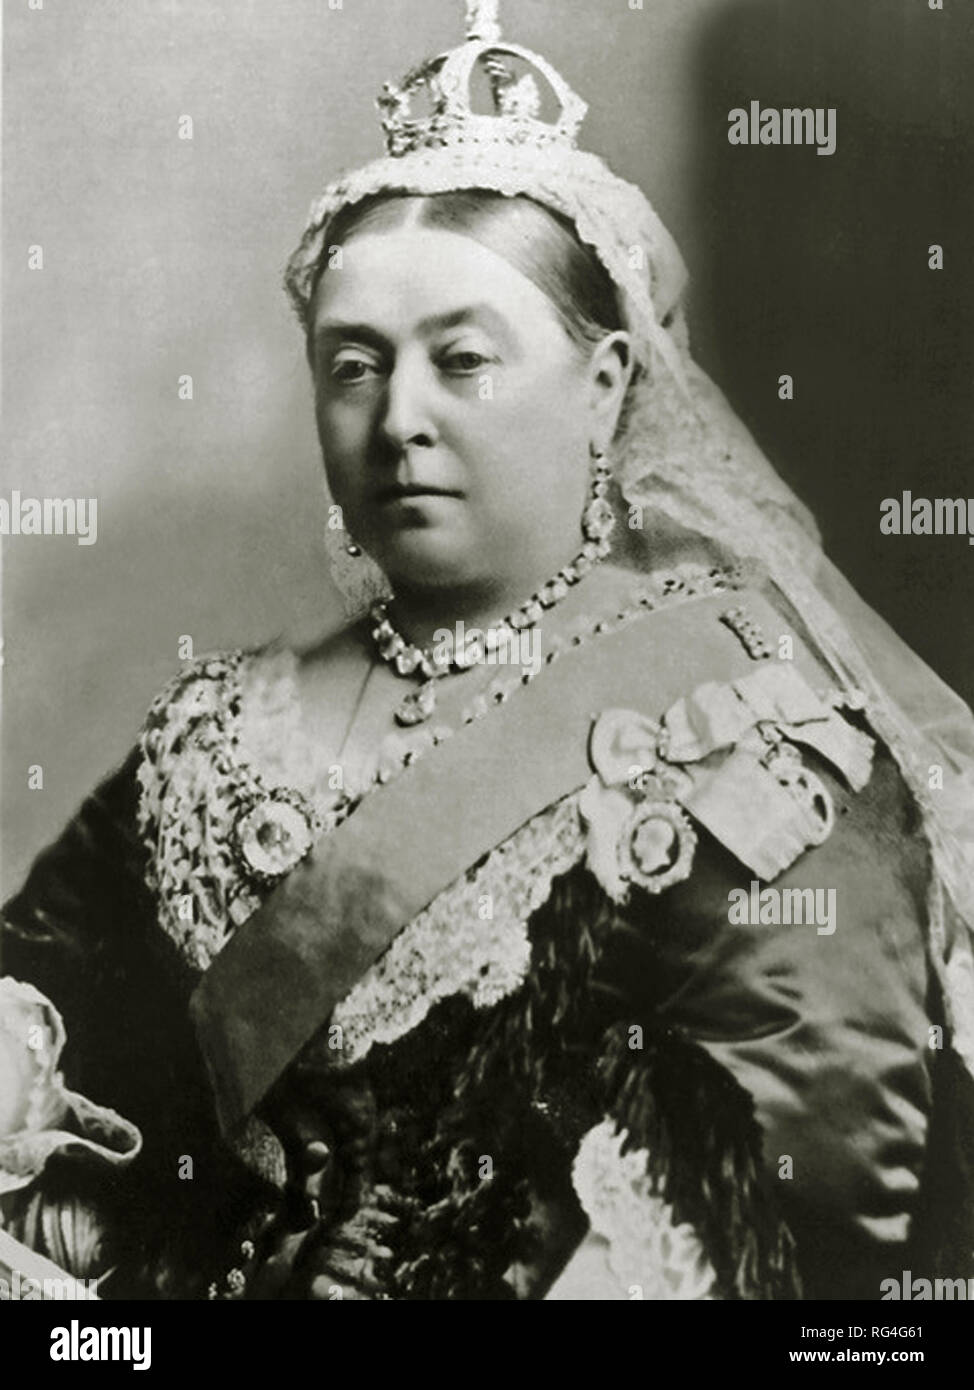 Victoria war Königin des Vereinigten Königreichs von Großbritannien und Irland vom 20. Juni 1837 bis zu ihrem Tod im Jahre 1901. Am 1. Mai 1876, nahm sie die zusätzlichen Titel der Kaiserin von Indien. Von Bildmaterial in den Archiven der Presse Portrait Service gescannt - (ehemals Presse Portrait Bureau). Stockfoto